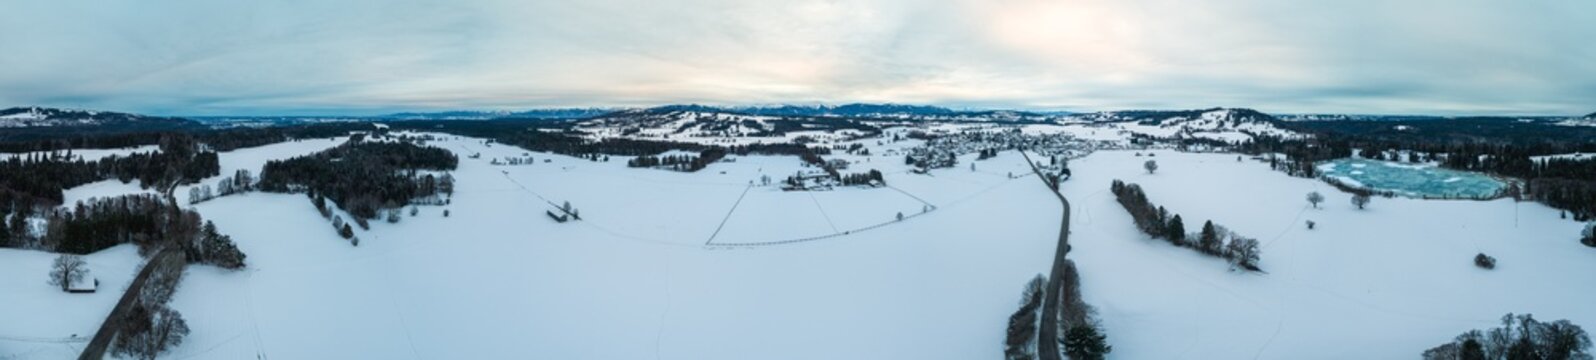 Winterlandschaft, Drohnenaufnahme, Panorama, Winter, Schnee, Landschaft, Luftbild, Luftaufnahme, Sonne, Nebel, Wolken